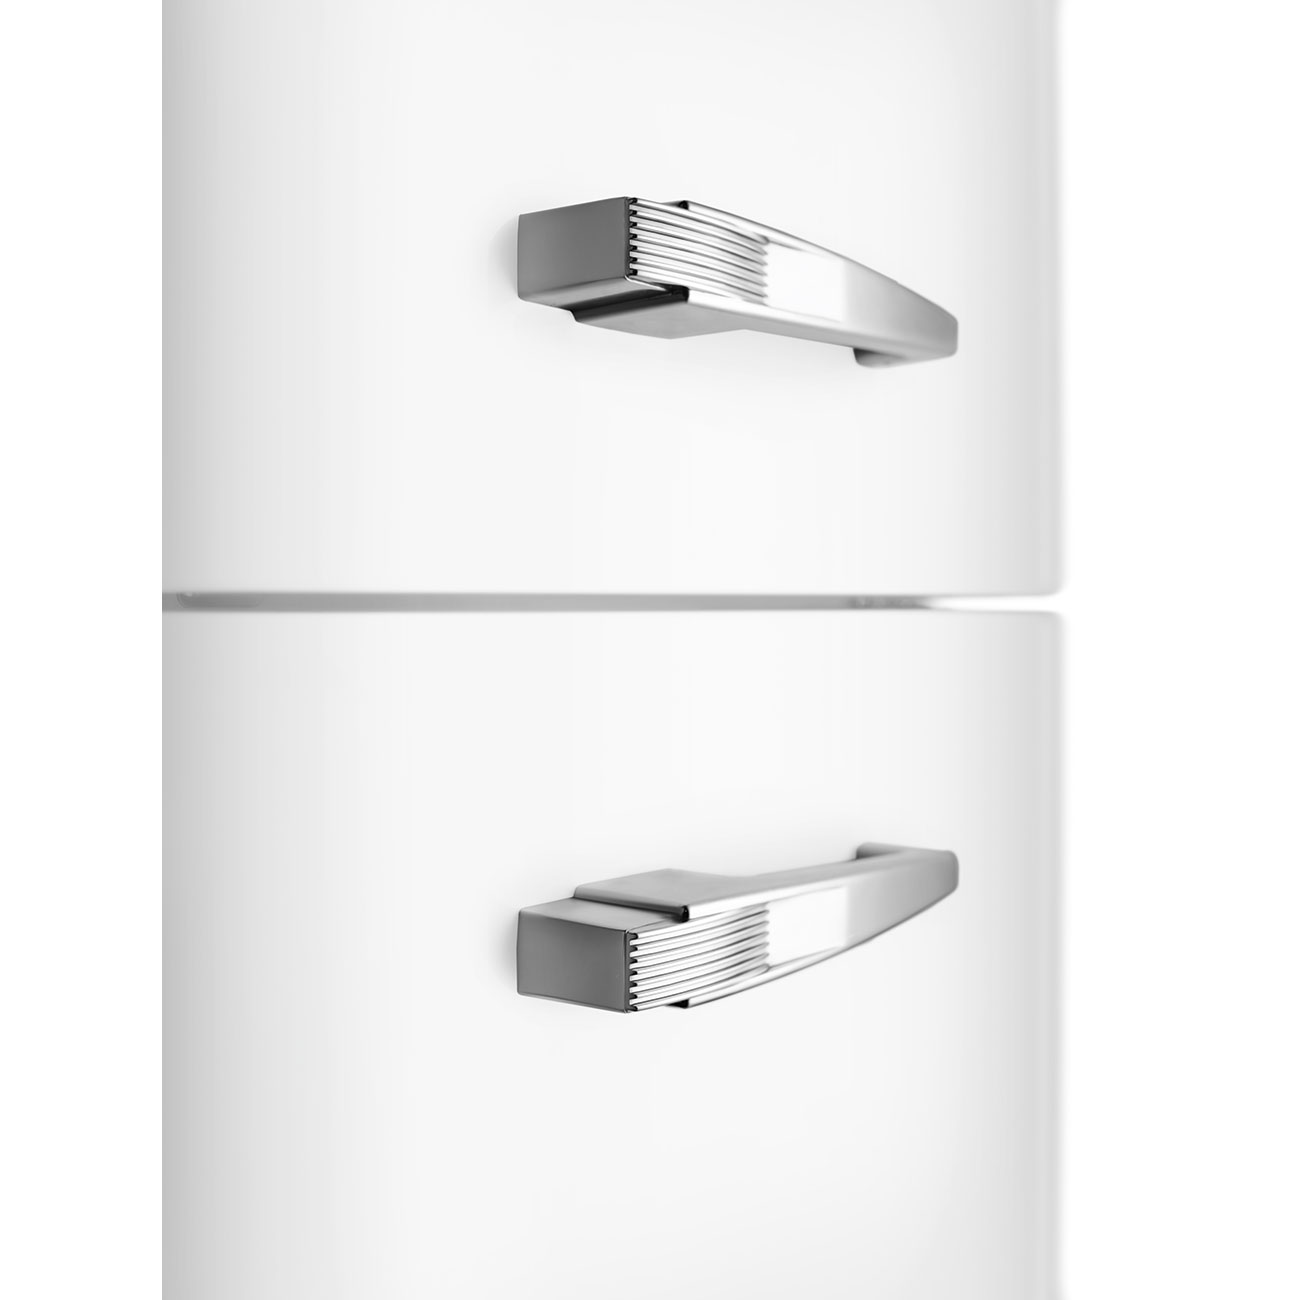 SMEG FAB30RWH5 Отдельностоящий двухдверный холодильник, стиль 50-х годов, 60 см, белый, петли справа